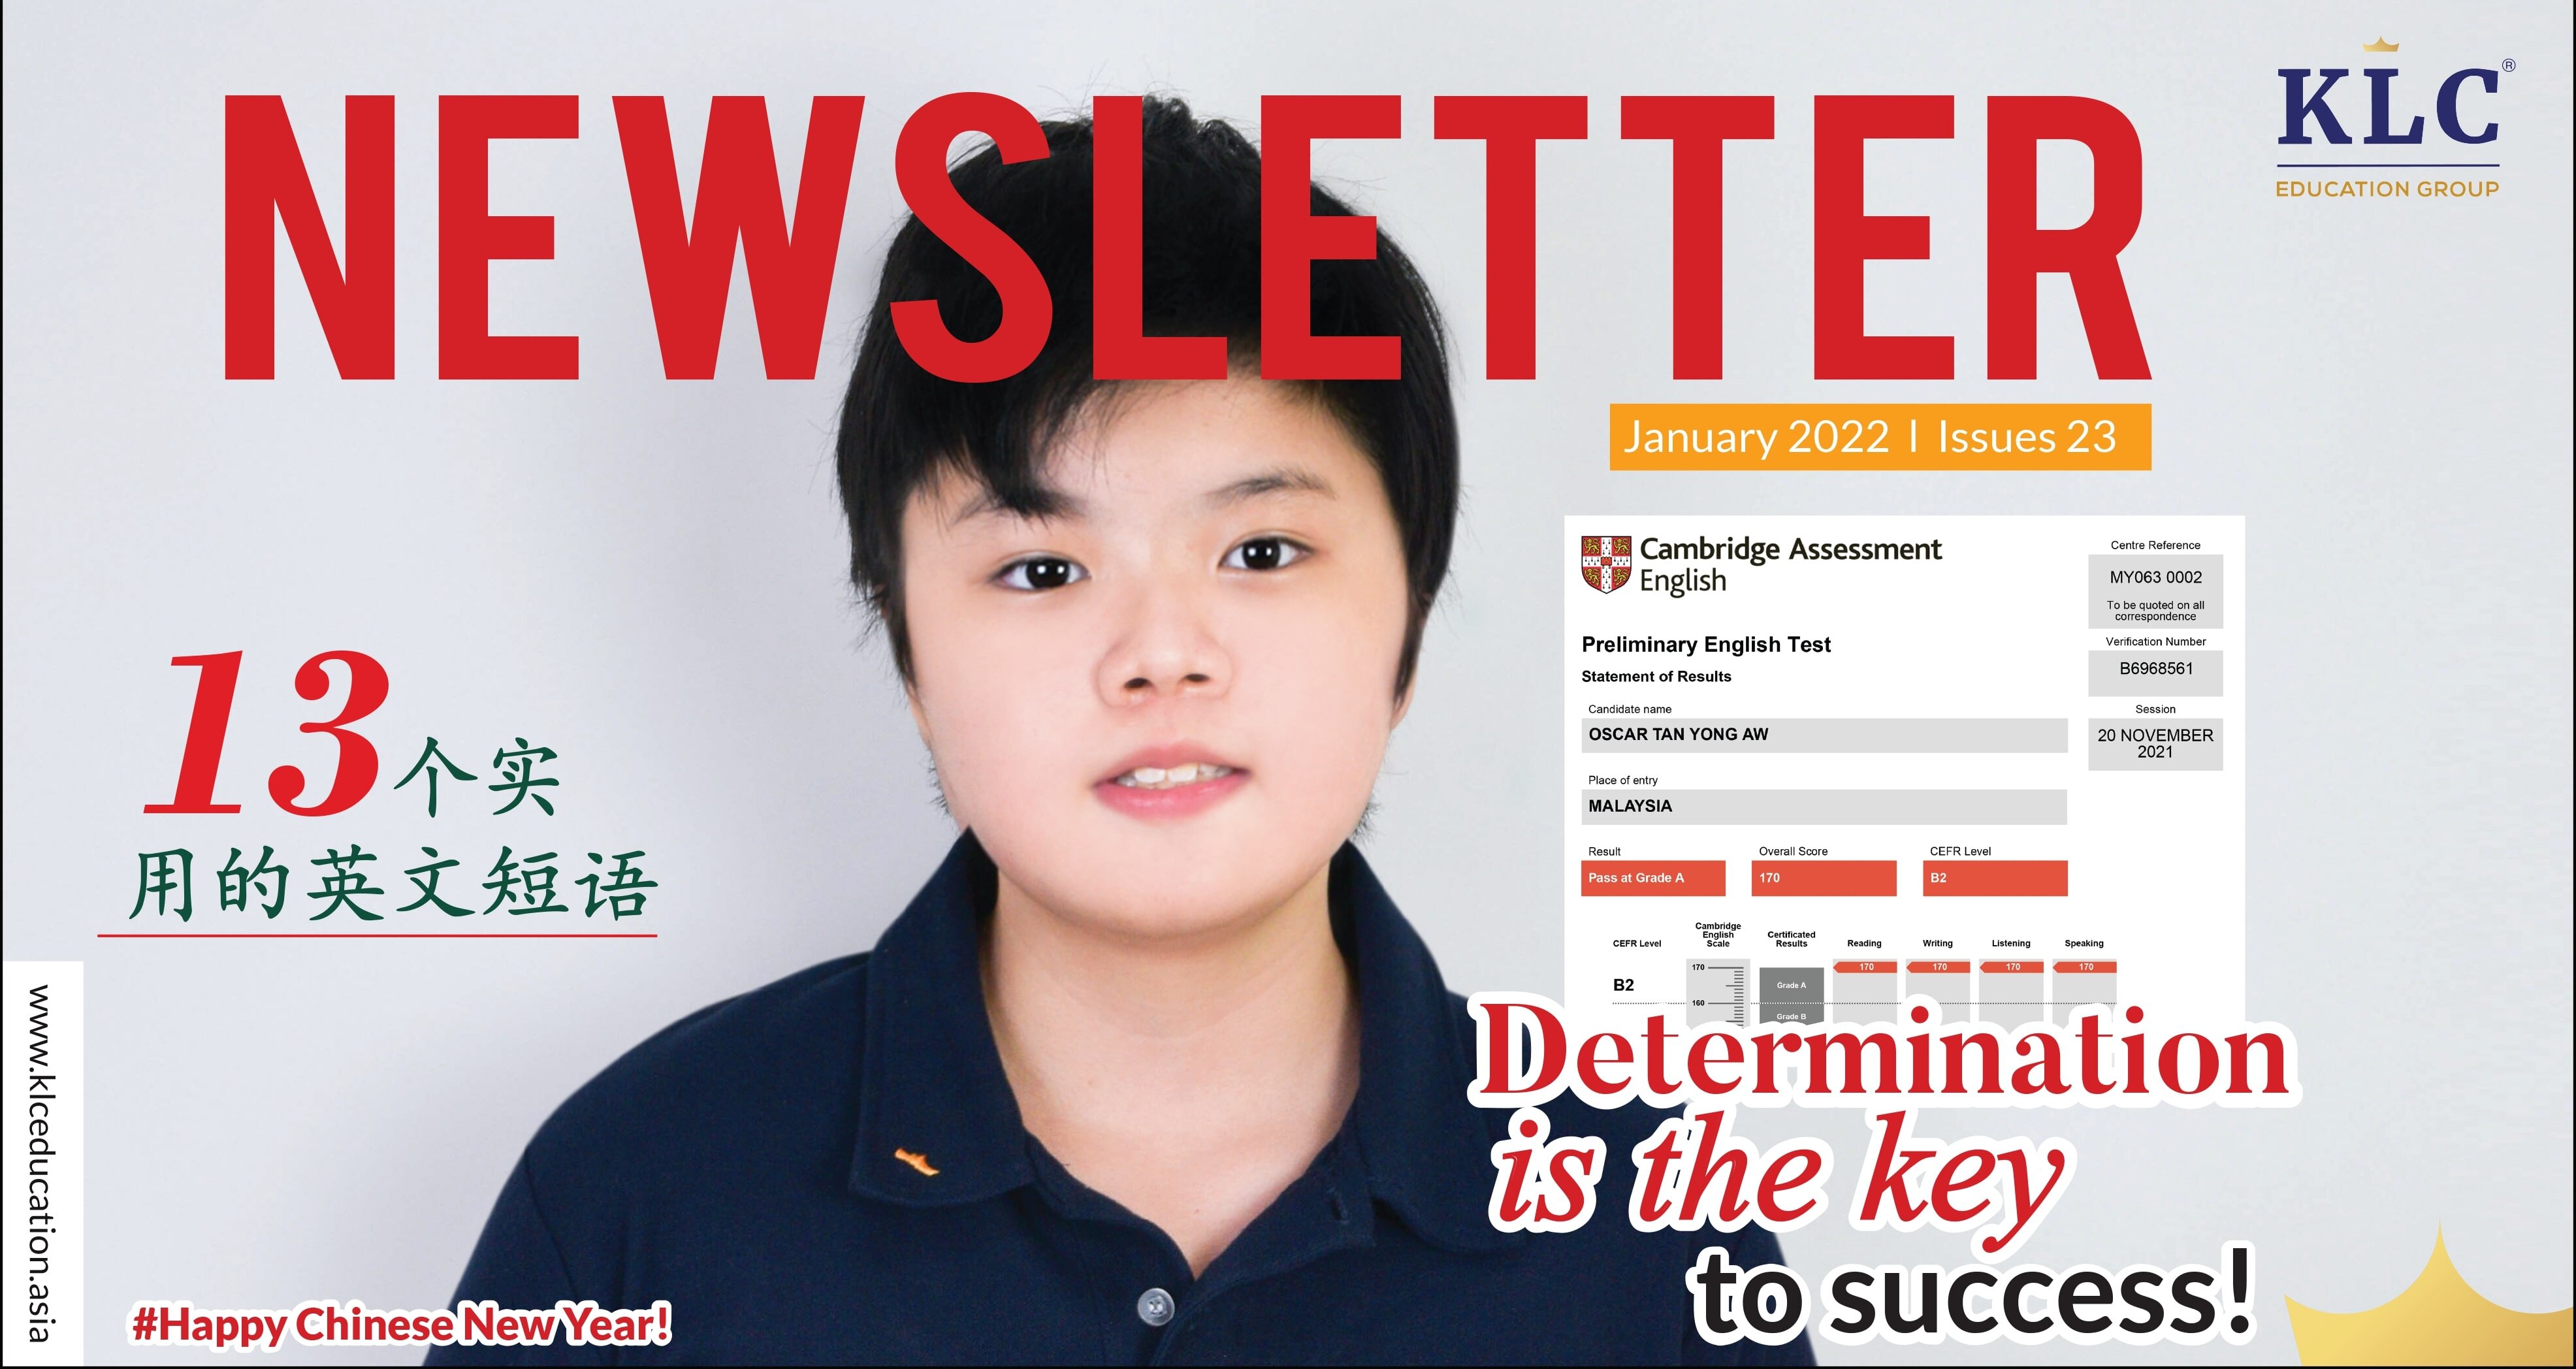 KLC Newsletter January 2022